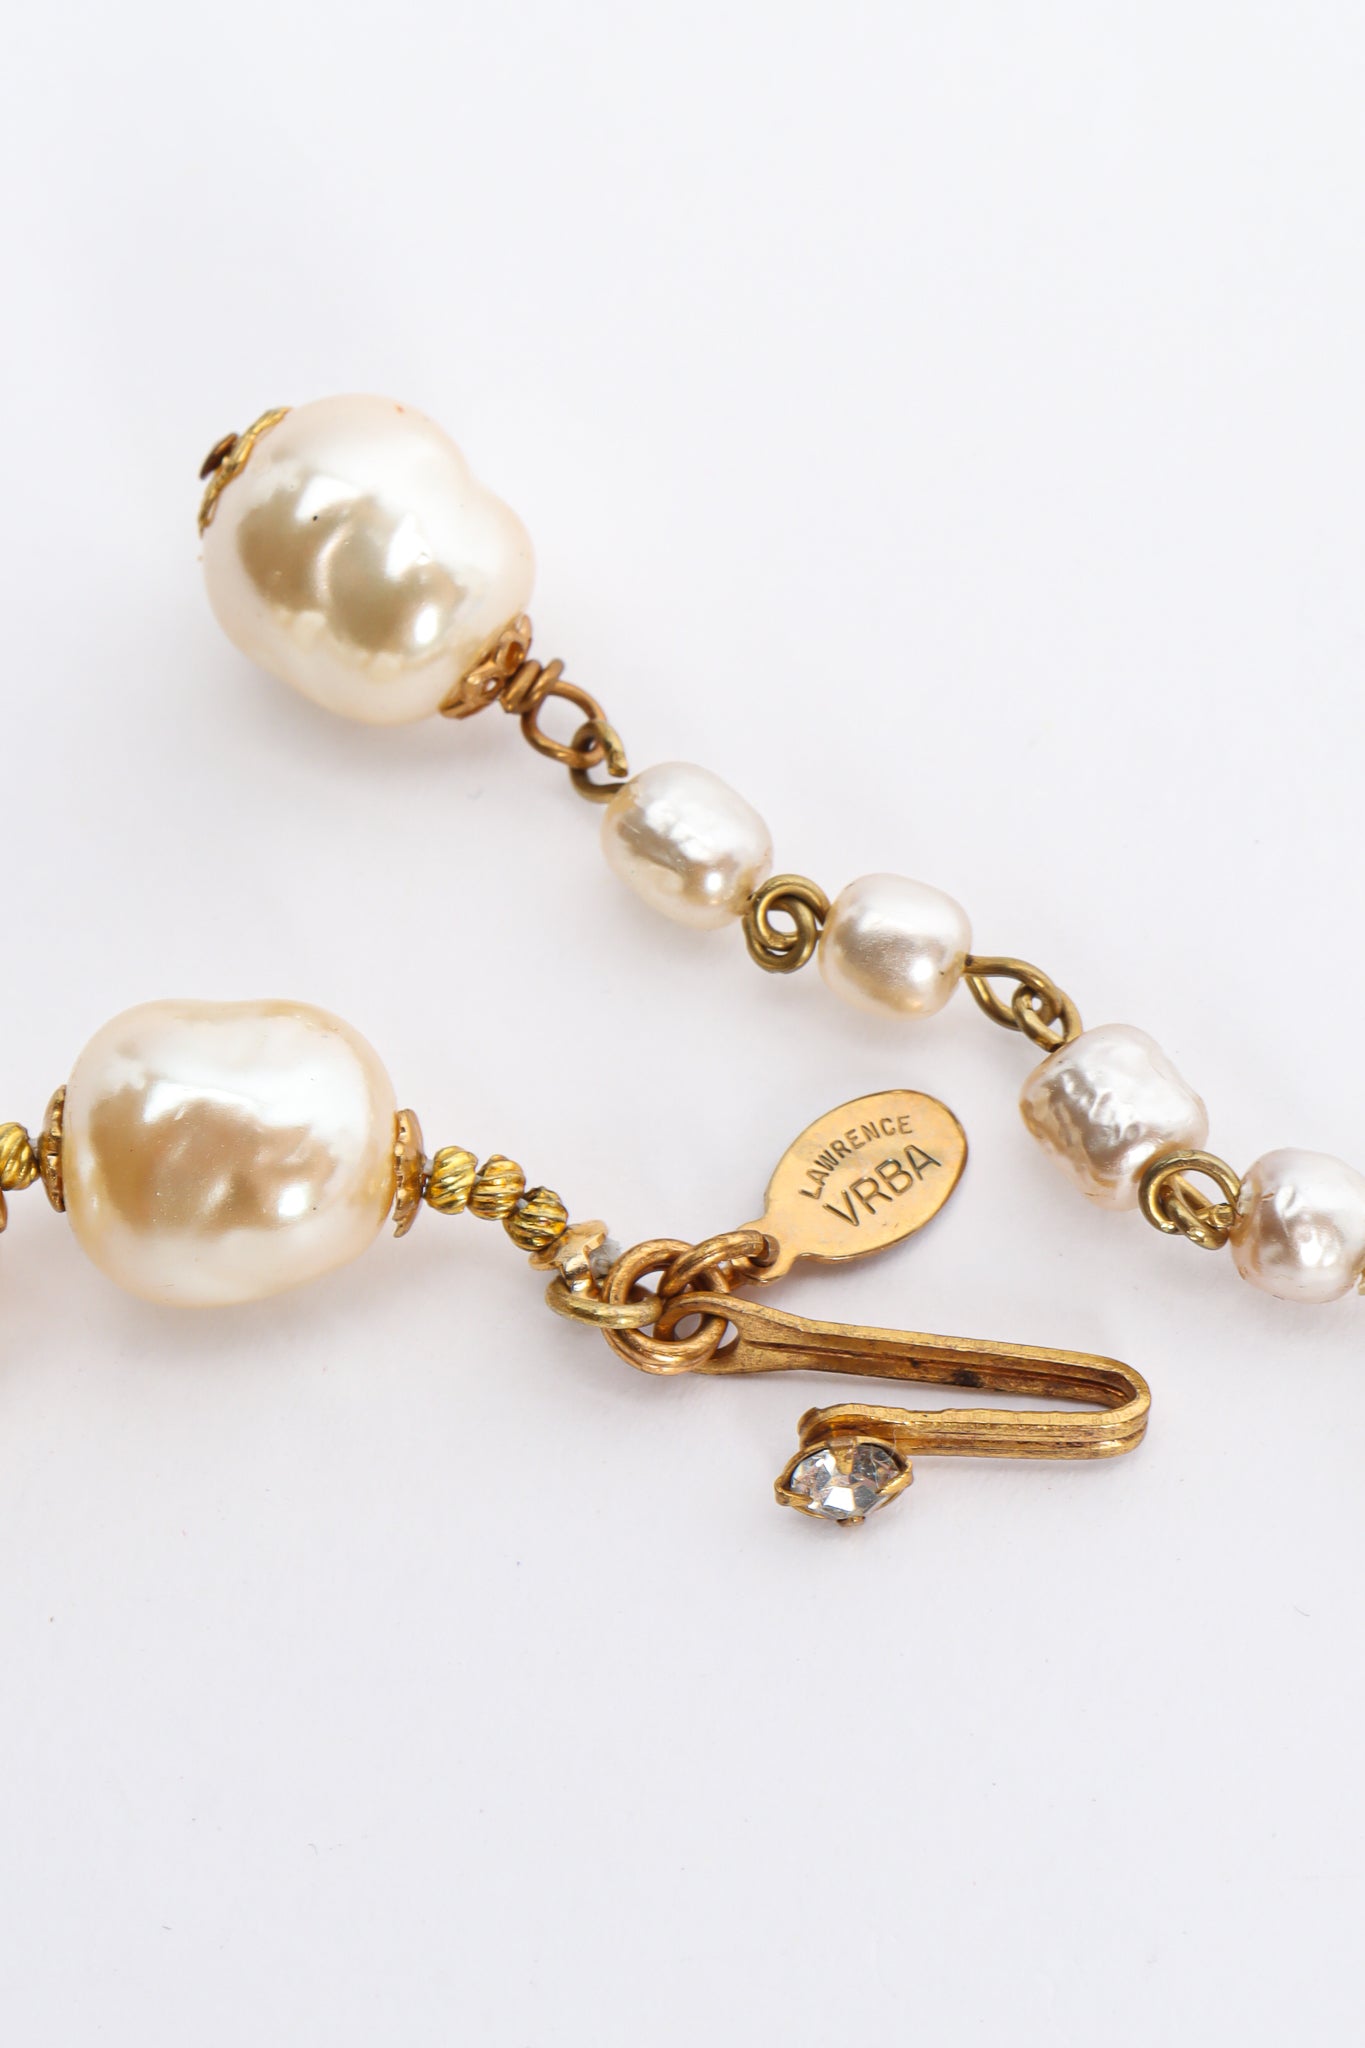 Vintage Lawrence Vrba Baroque Pearl & Crystal Necklace signed charm @ Recess LA